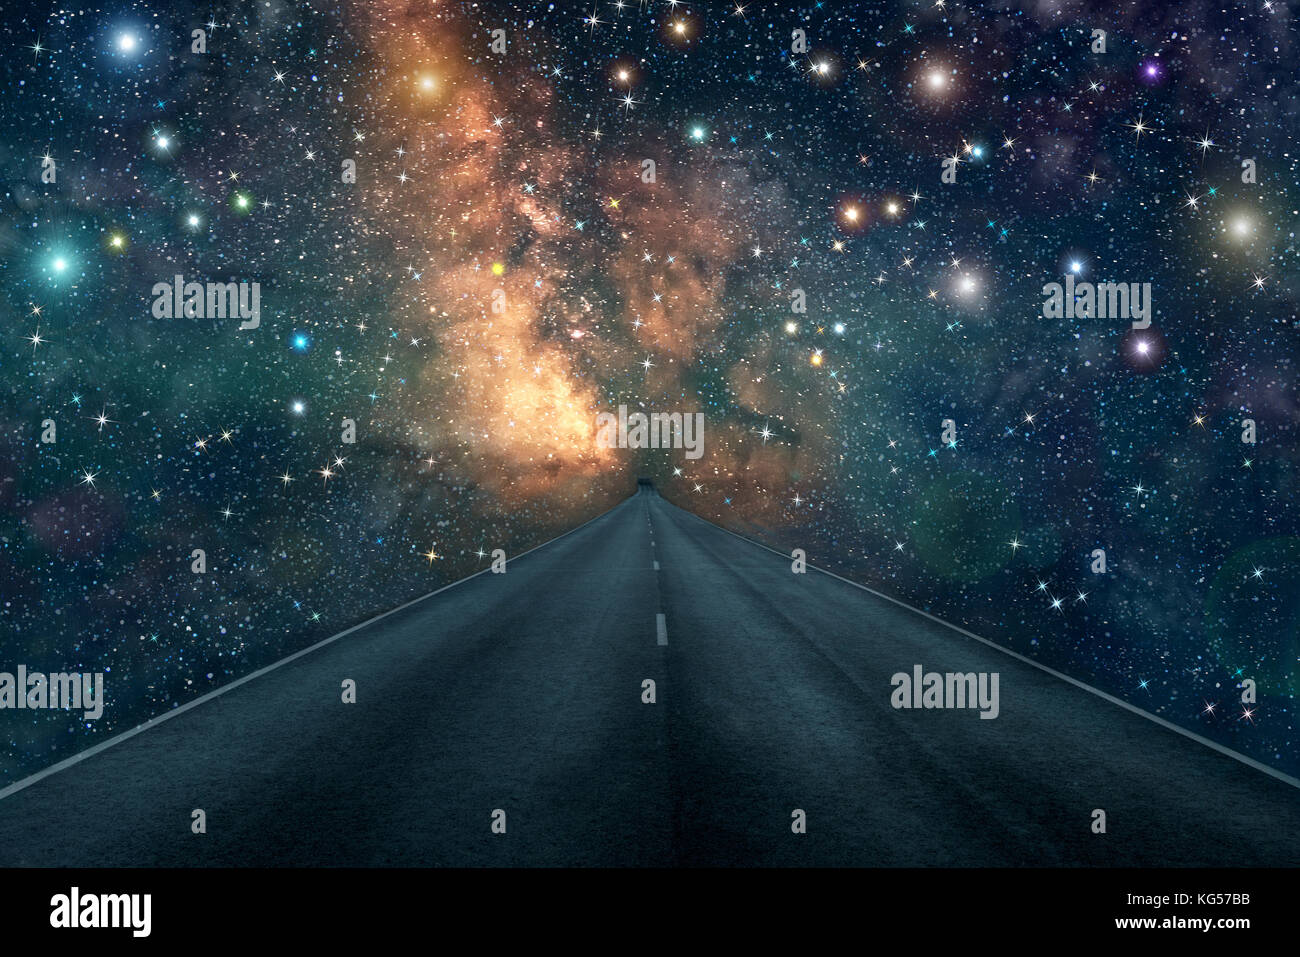 Hell abstrakt Hintergrund mit einem geraden asphaltierten Straße nach der Milchstraße, Sterne und Nebel im Weltraum Stockfoto